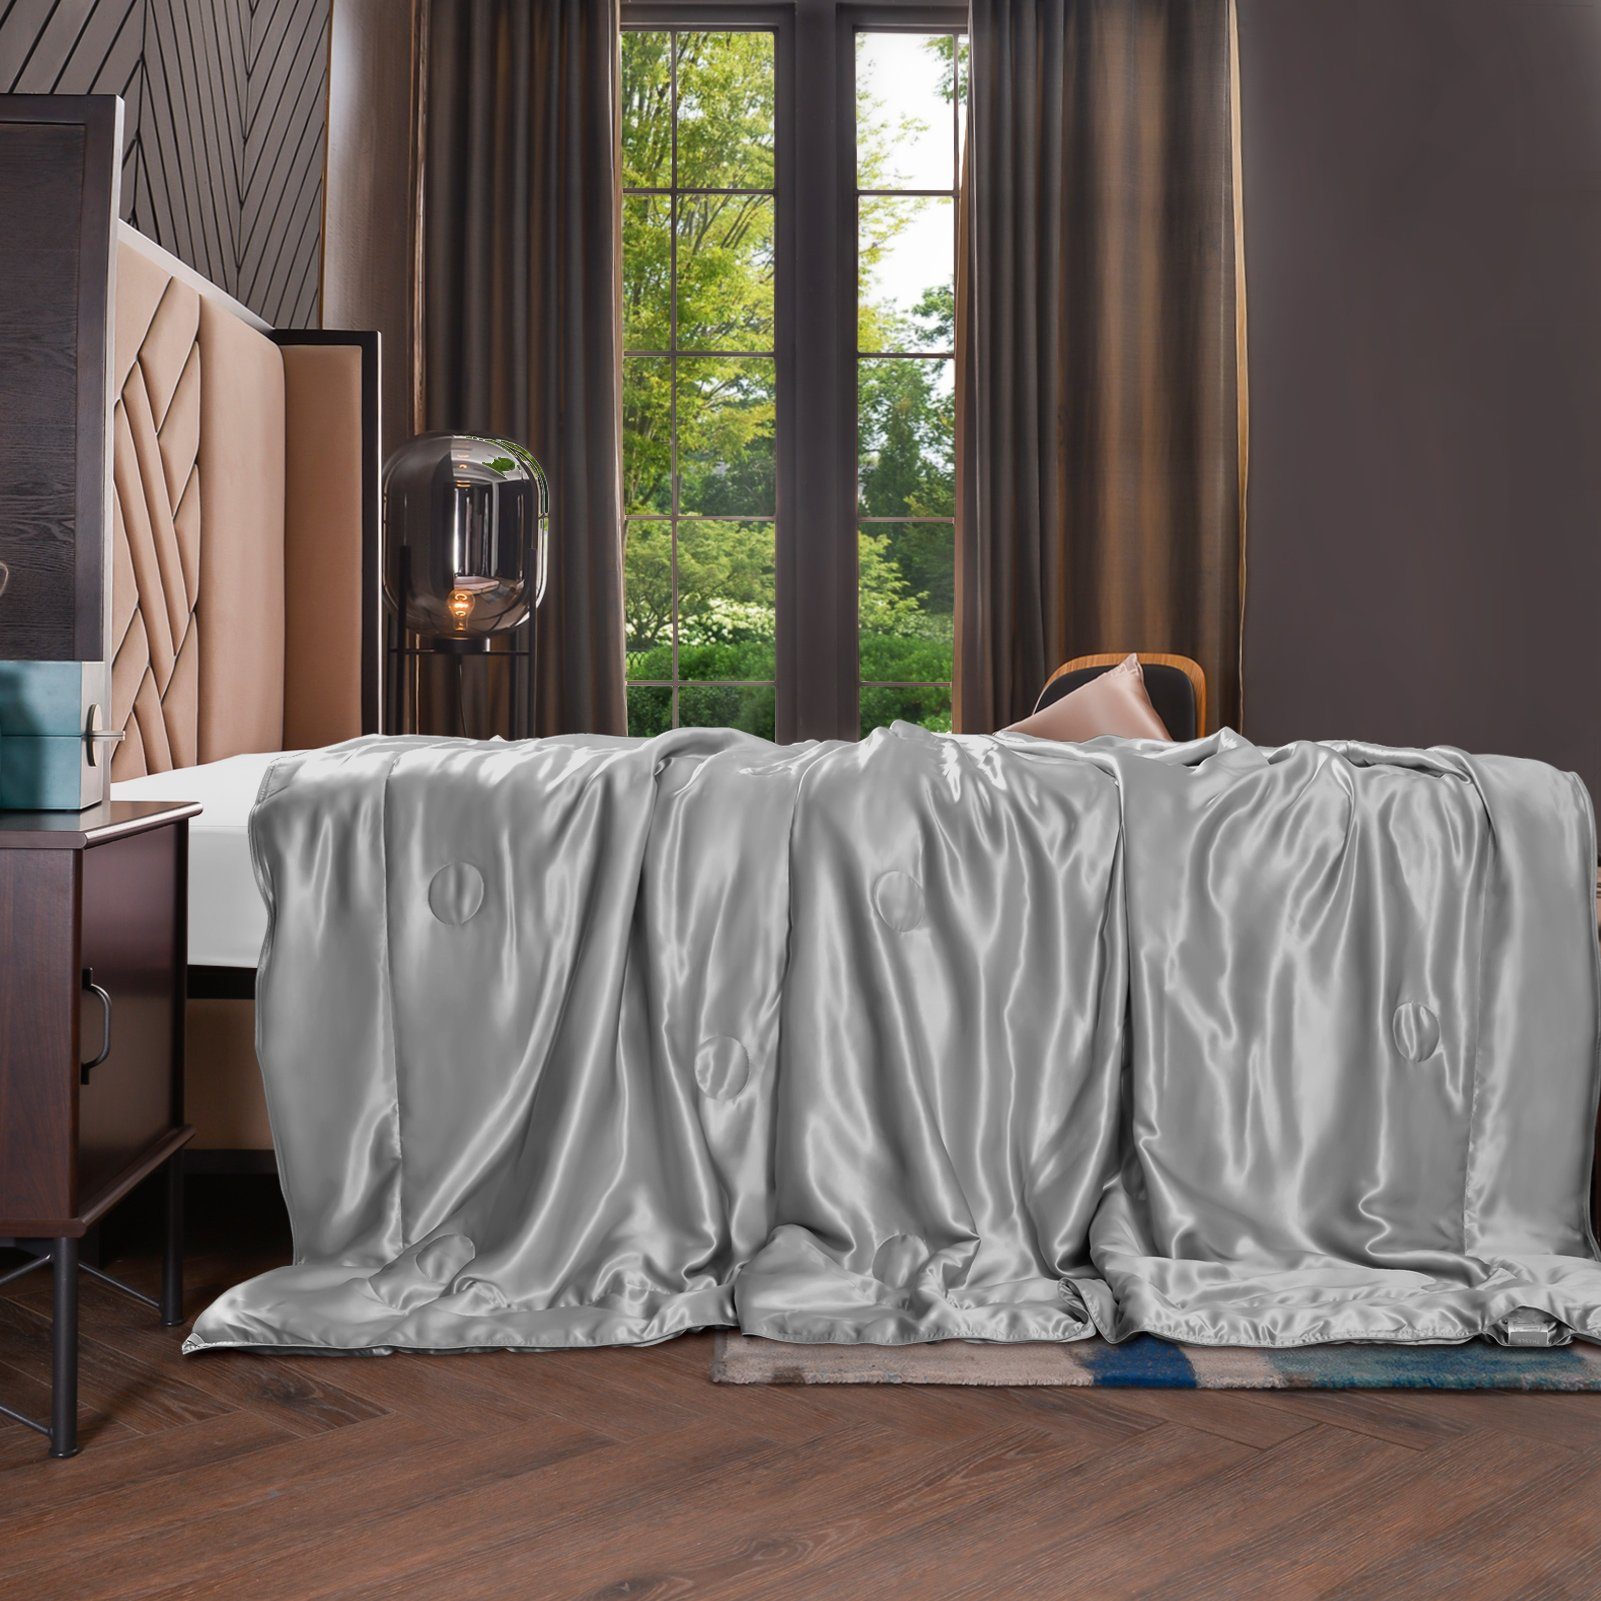 Sommerbettdecke, 135x180 cm, THXSILK, Füllung: 100% Seide, Bezug: 100% Seide, kühlend, leicht, hautfreundlich Grau